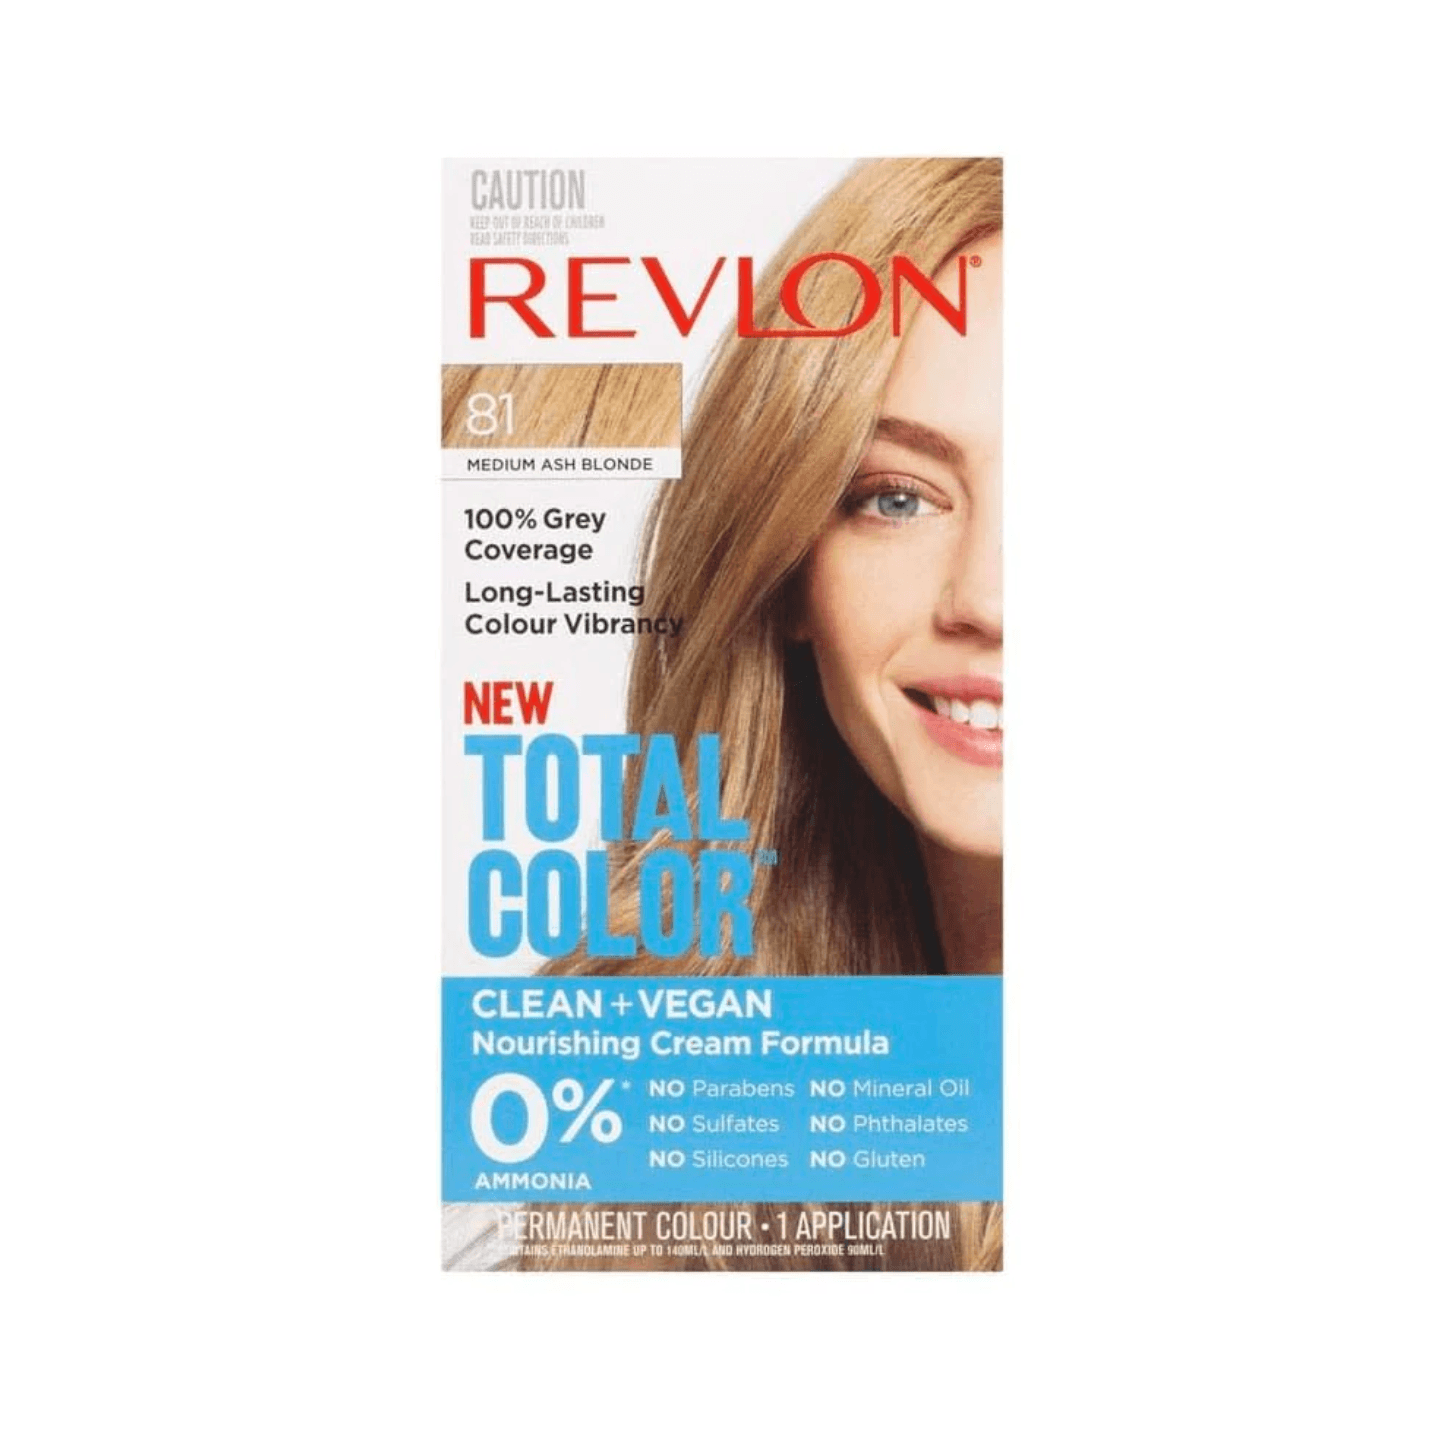 Revlon Total Color Permanent Colour 81 Medium Ash Blonde - www.indiancart.com.au - Hair Colour - Revlon - Revlon